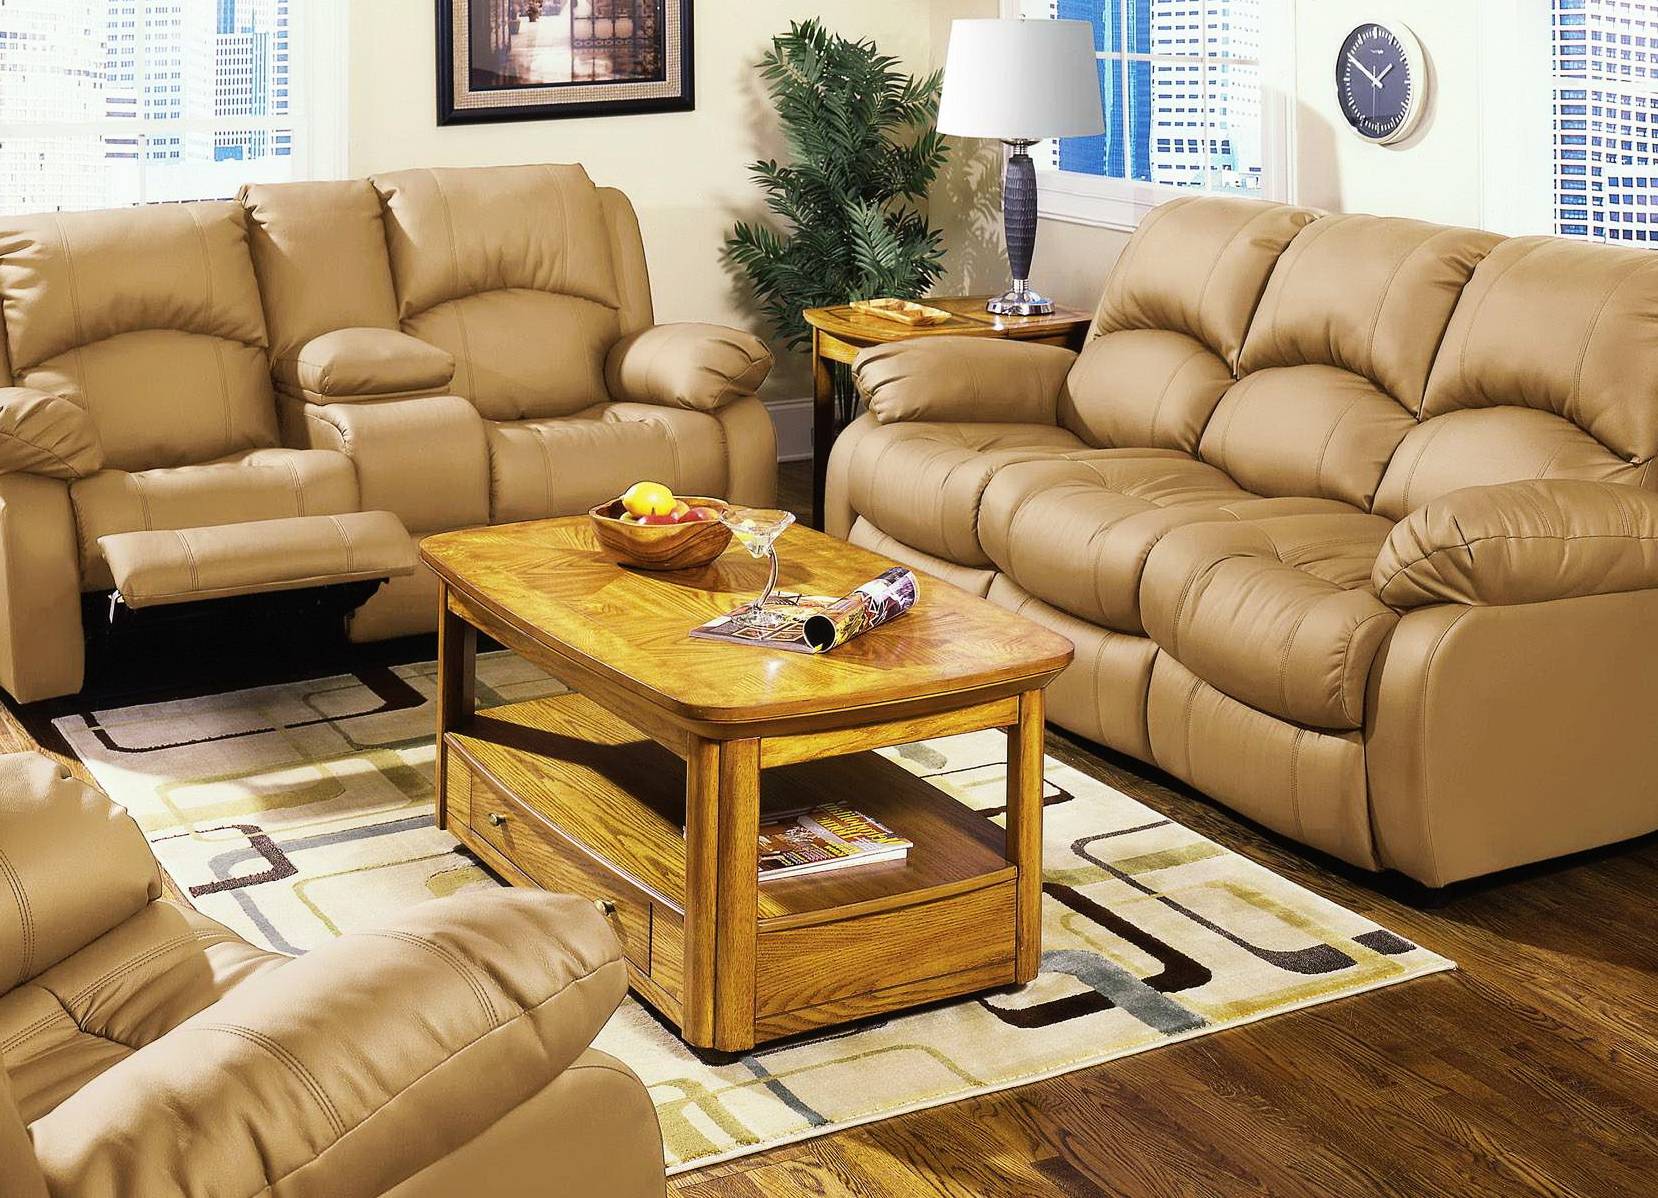 Мебель кожаные диваны. Кожаный диван. Диваны кожаные современные. Кожаная мебель в интерьере. Красивый кожаный диван в интерьере.